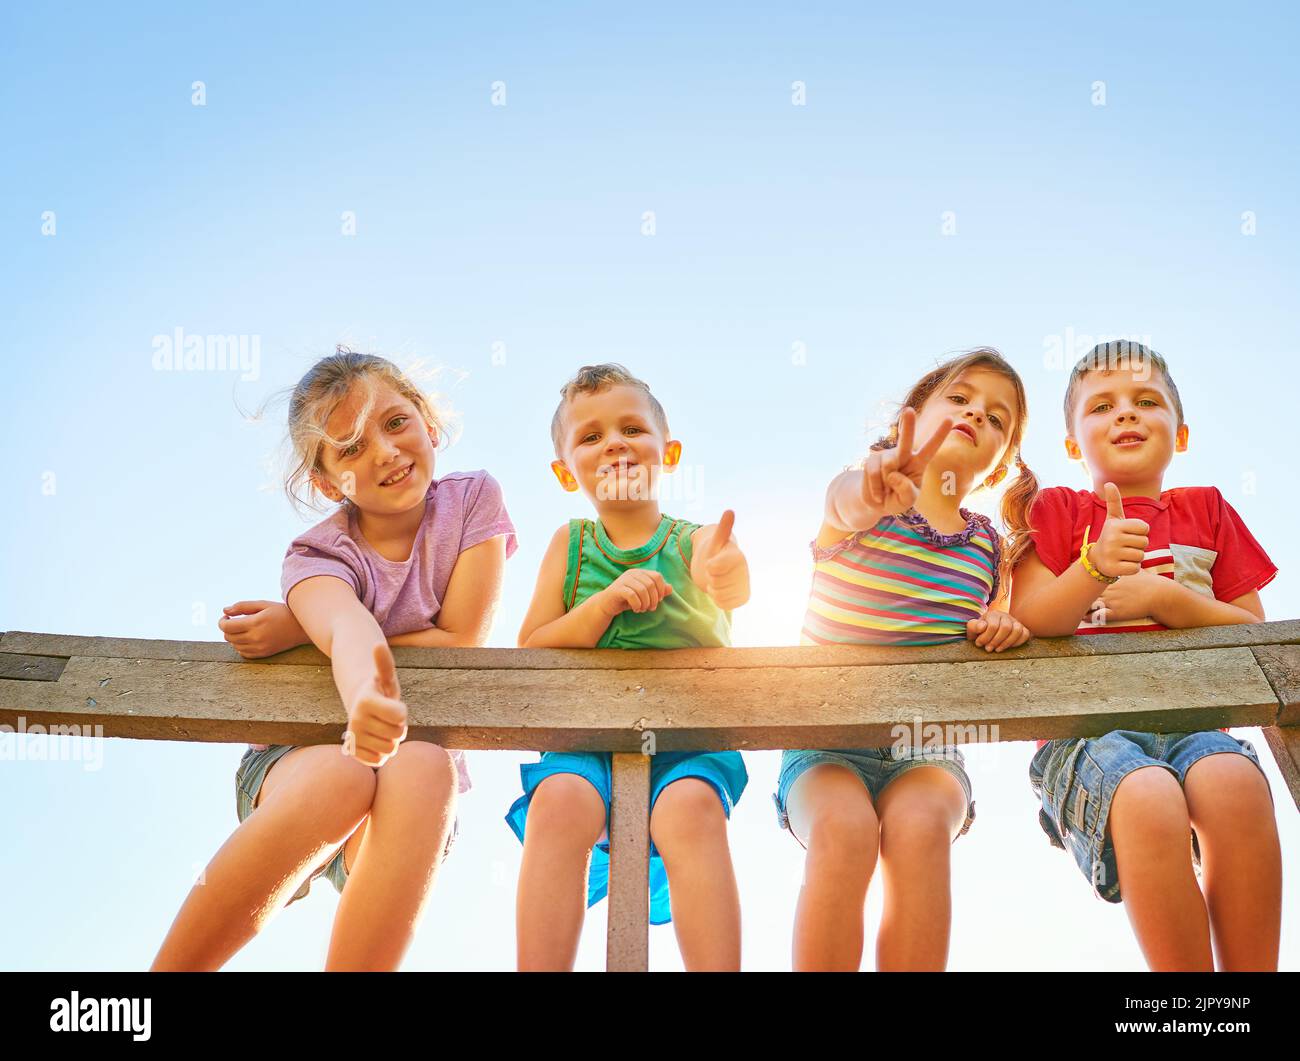 Daumen hoch für ein wenig Sommerspaß. Porträt einer Gruppe von kleinen Kindern, die Daumen hoch zeigen, während sie im Freien zusammen spielen. Stockfoto